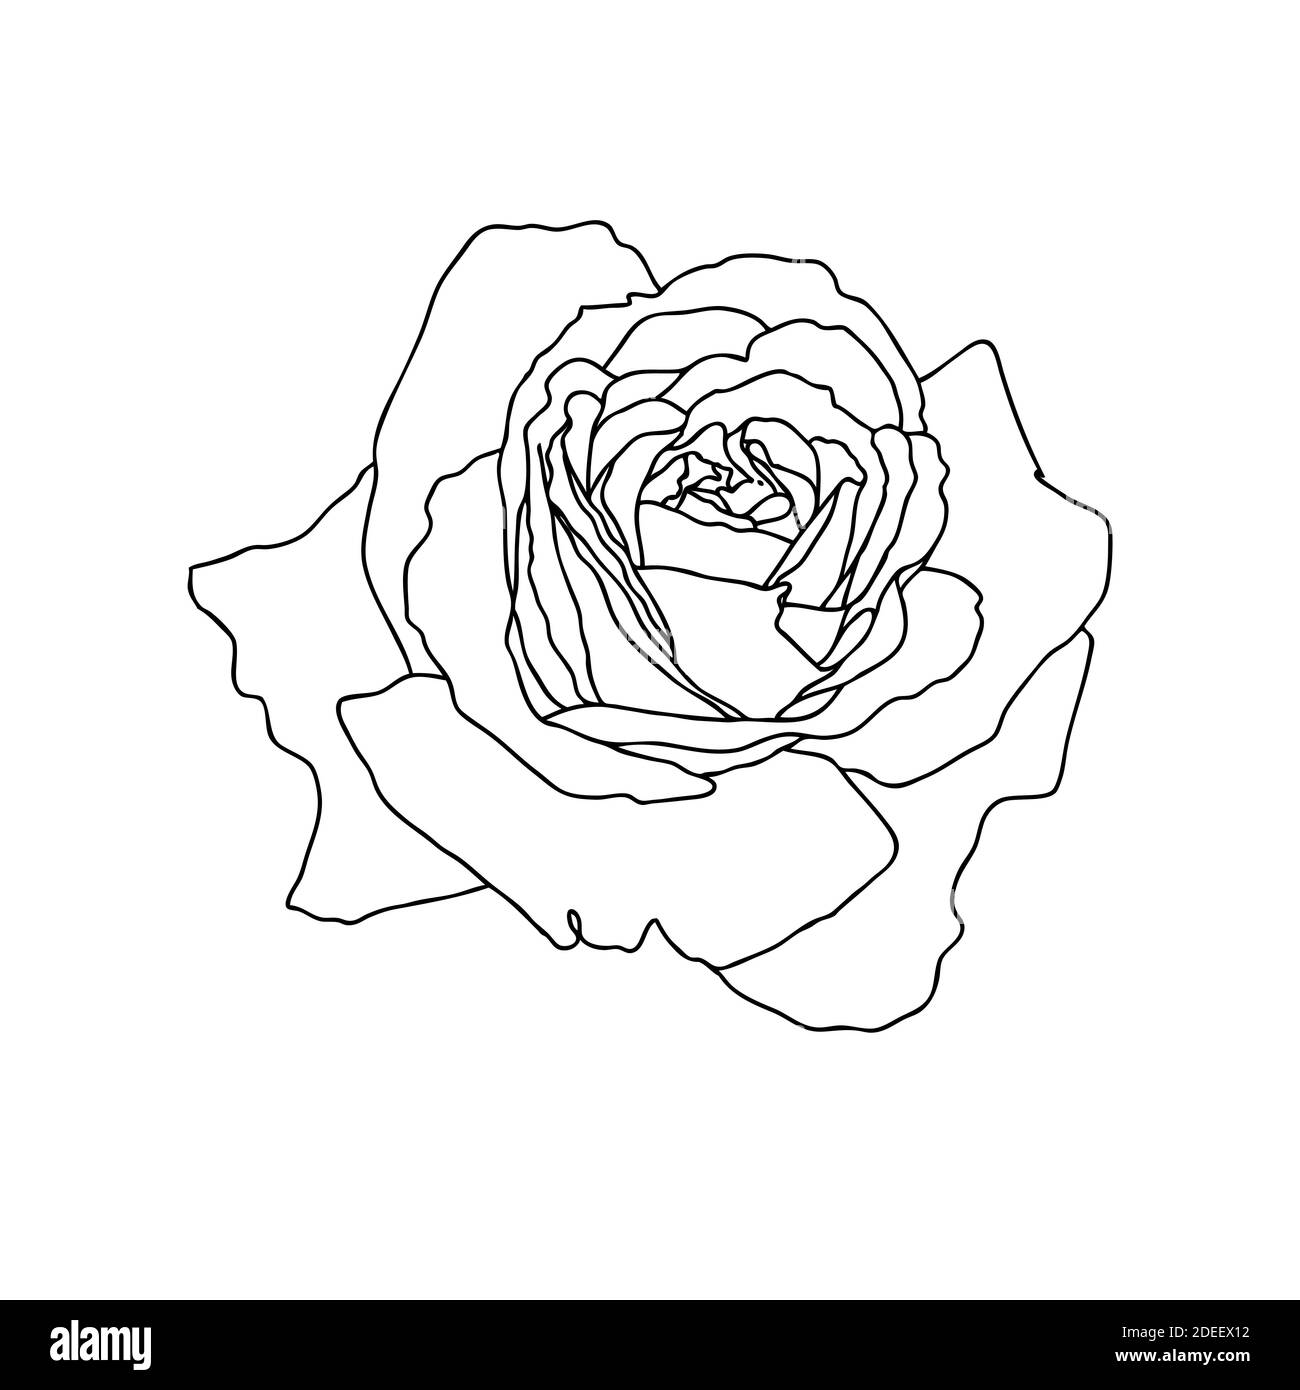 Un dessin de ligne de fleur de rose isolé sur fond blanc. Esquisse dessinée à la main, illustration vectorielle. Élément décoratif pour tatouage, carte de voeux, invitation de mariage, livre de coloriage Illustration de Vecteur